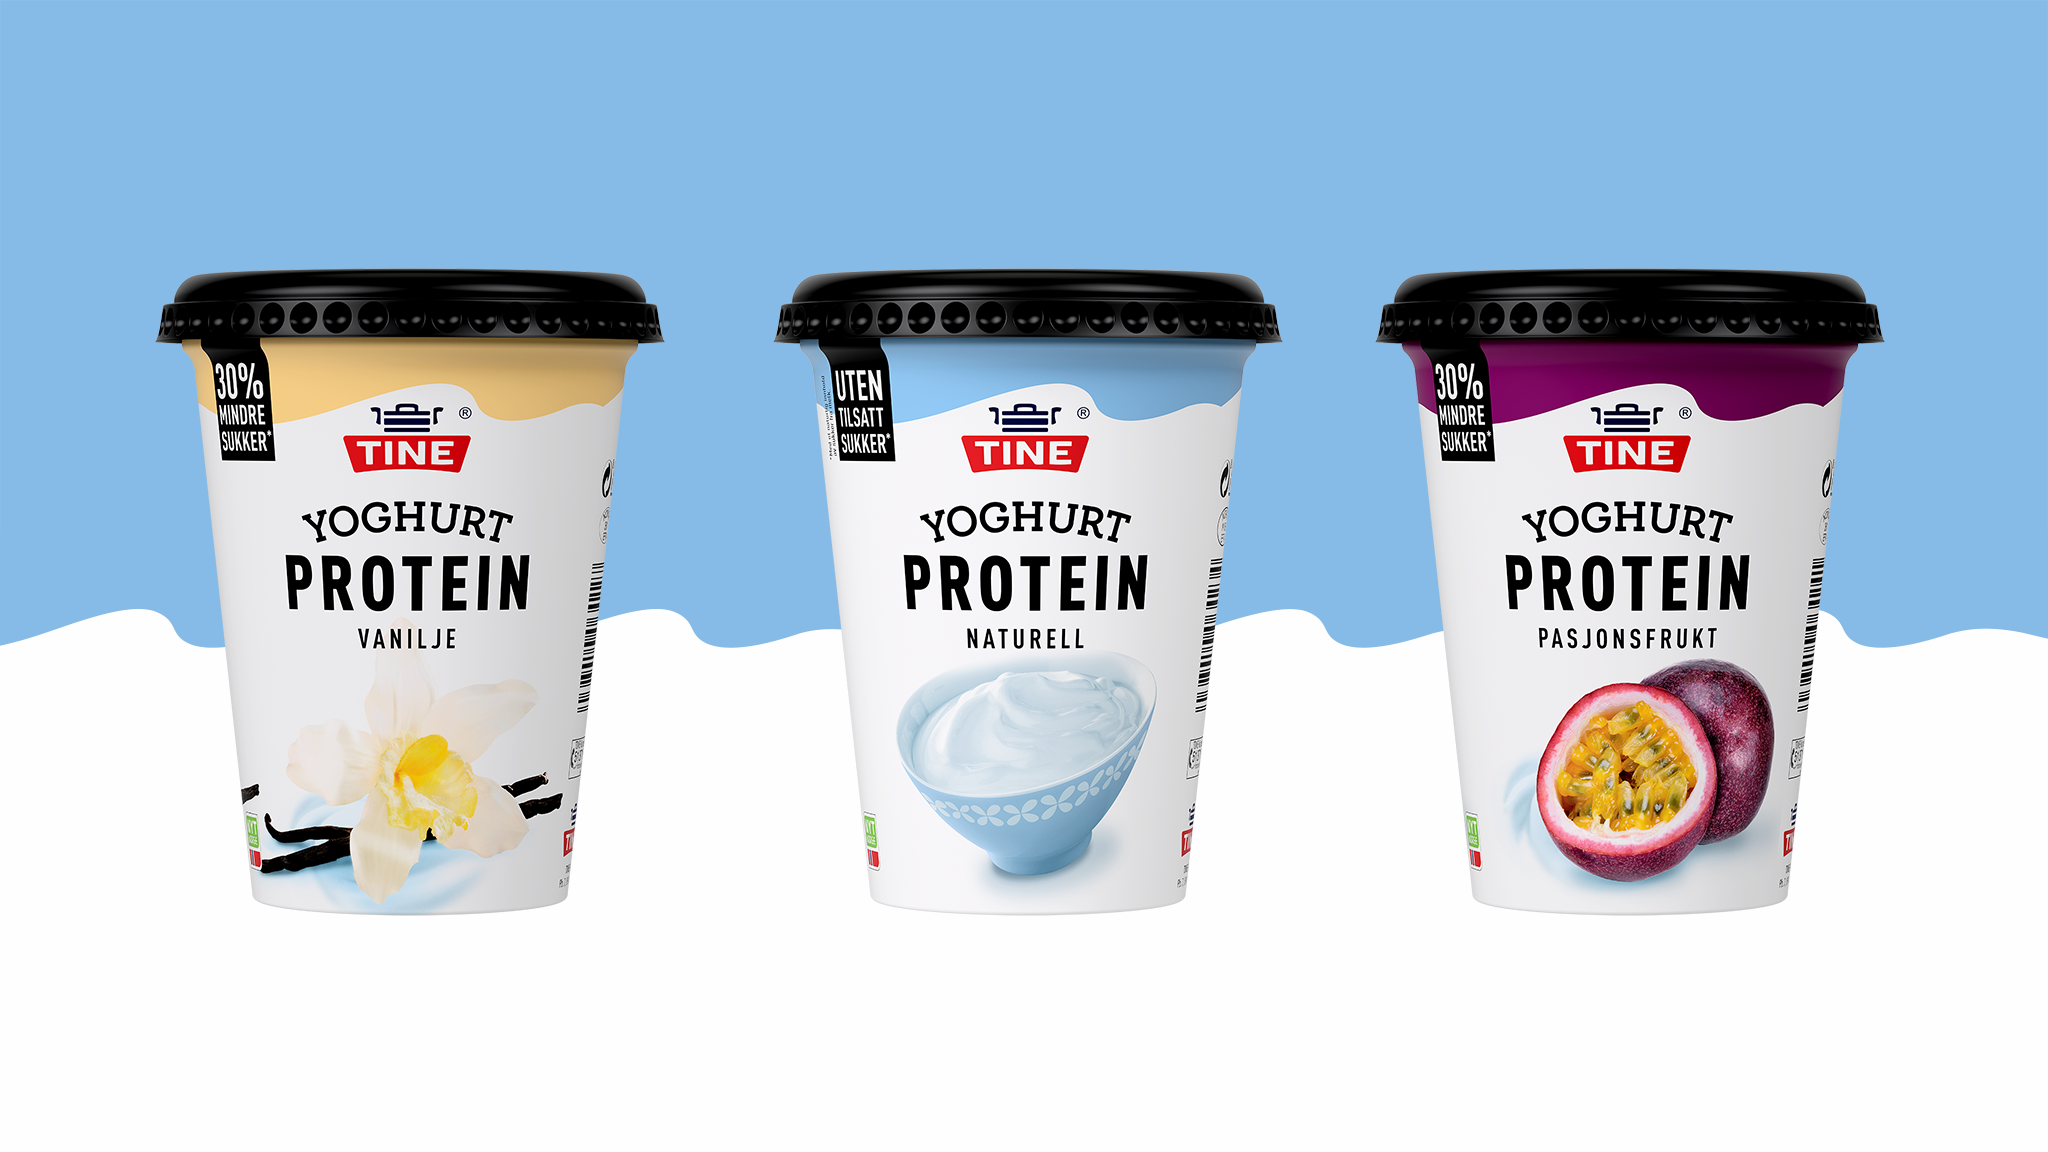 tine yoghurt protein